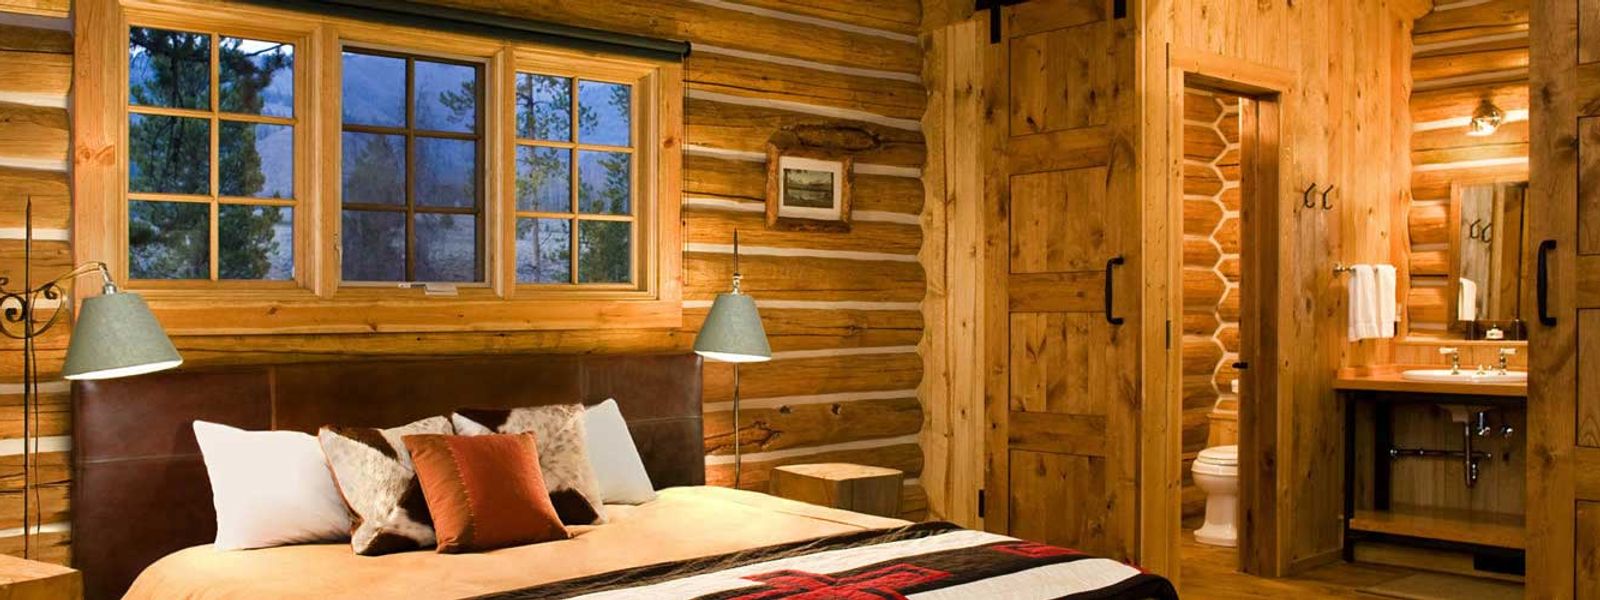 A cabin bedroom